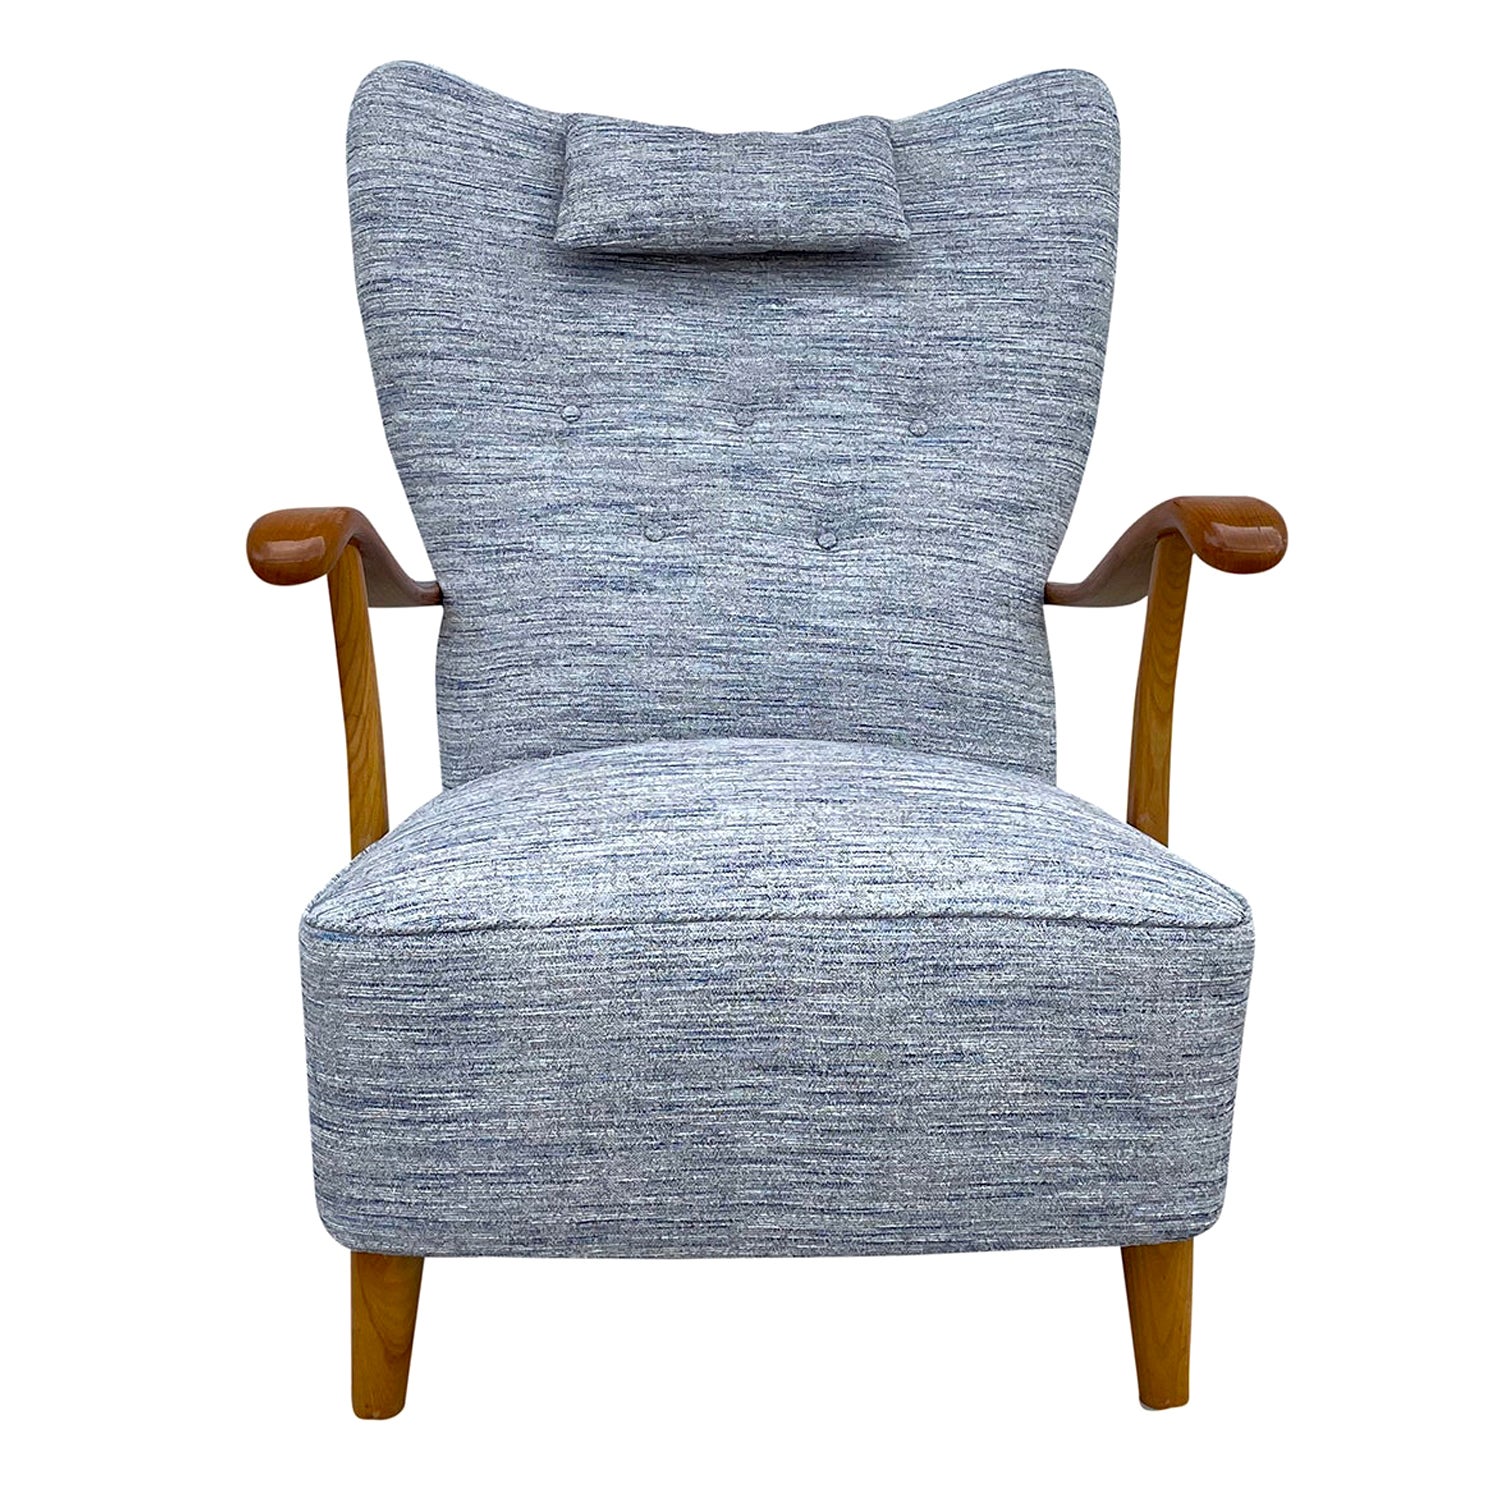 Blau-grauer dänischer Einzelsessel aus Nussbaumholz, 20. Jahrhundert, skandinavischer Vintage-Sessel